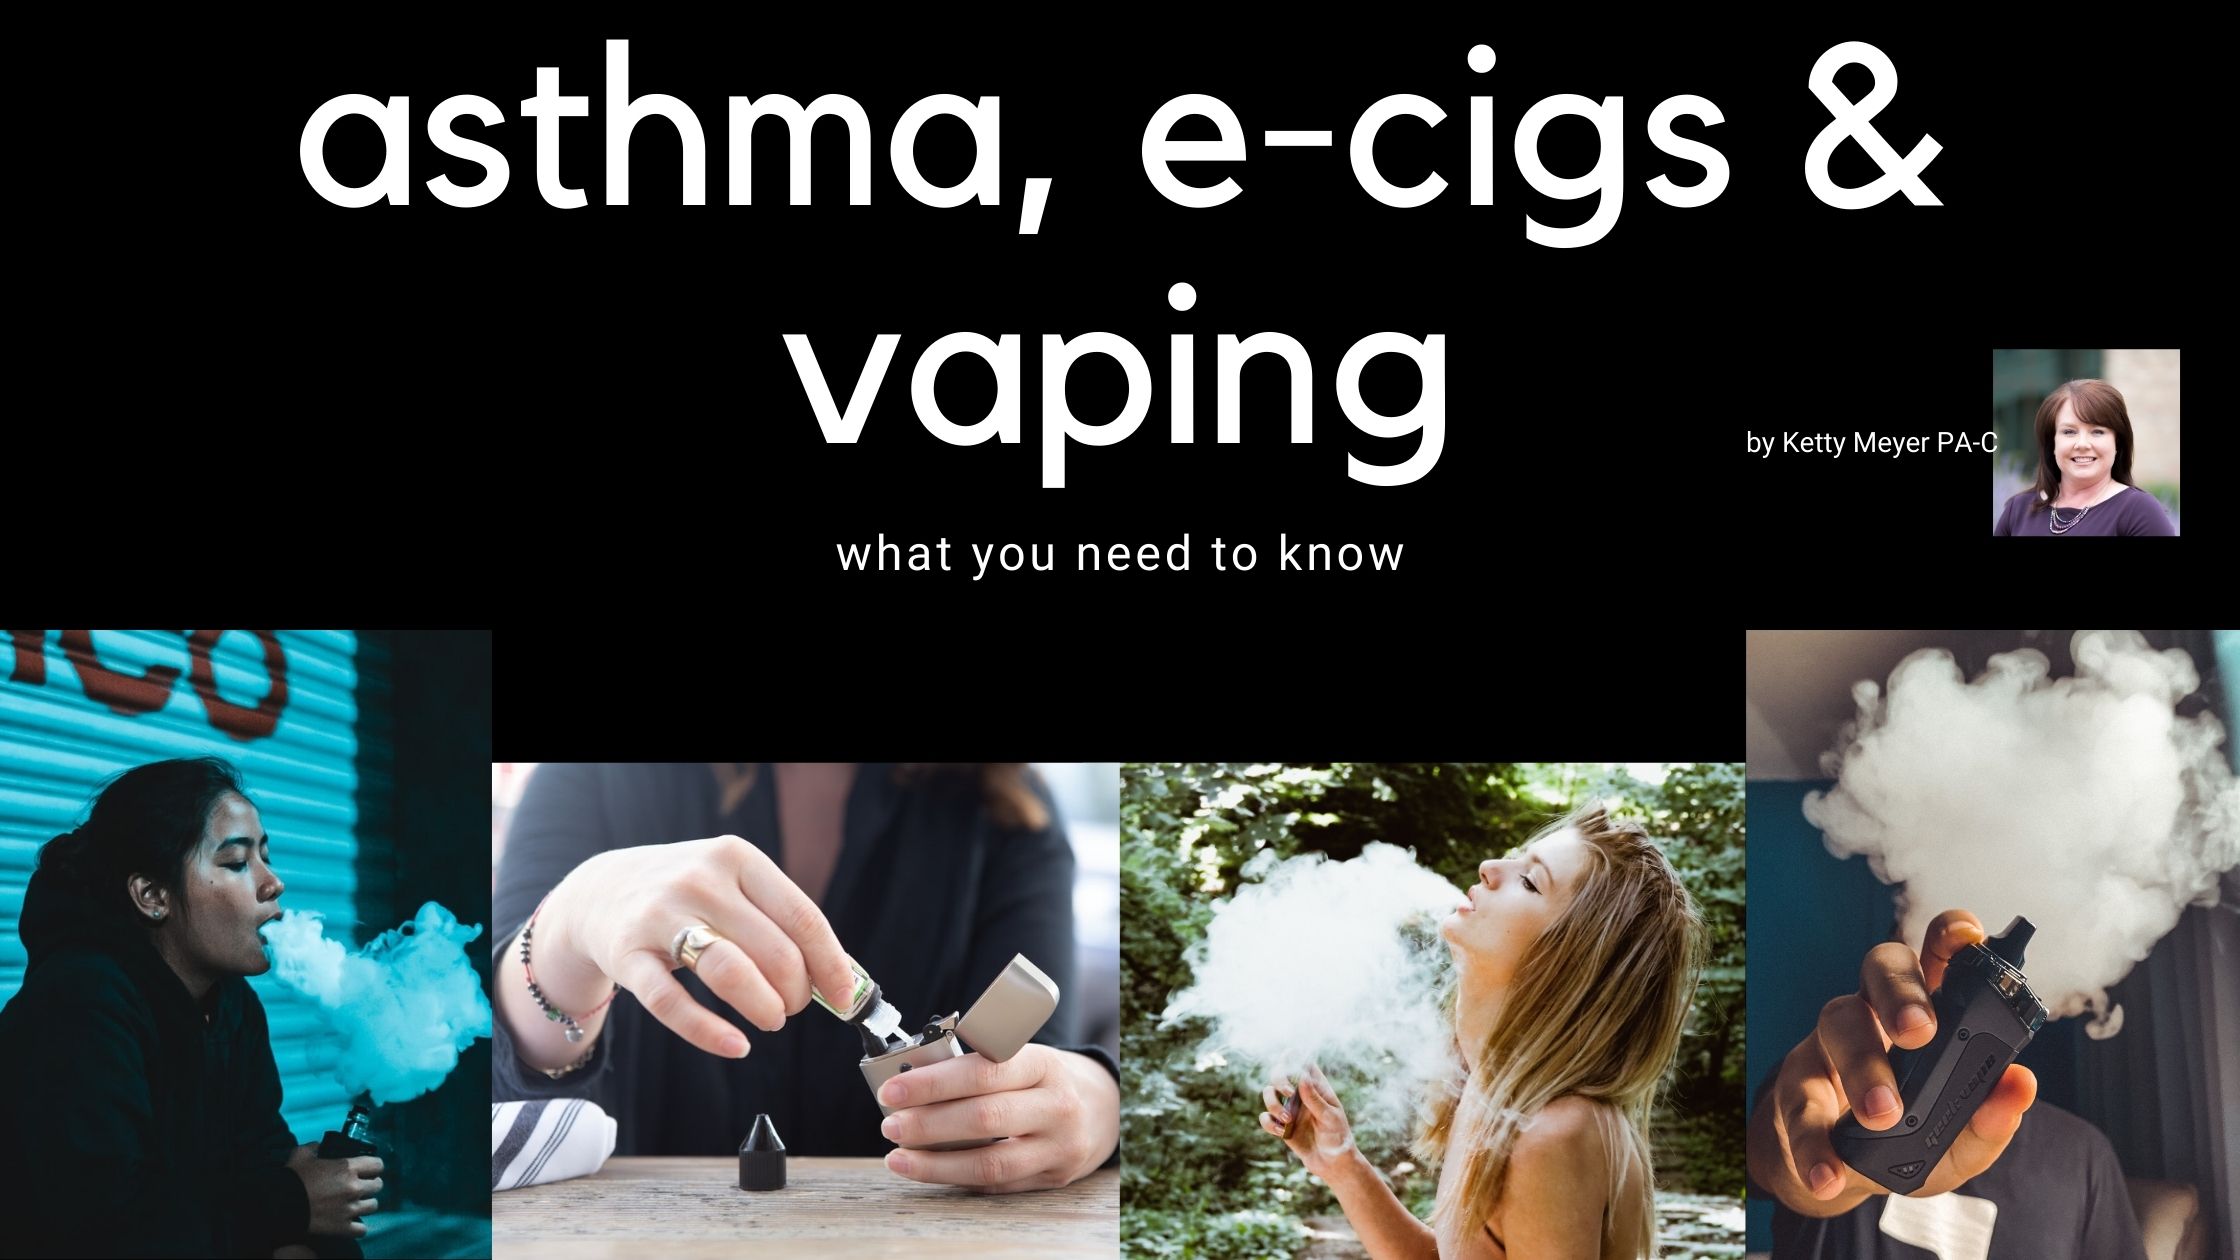 https://www.allergydenver.com/wp-content/uploads/2020/10/asthma-ecigs-vaping.jpg